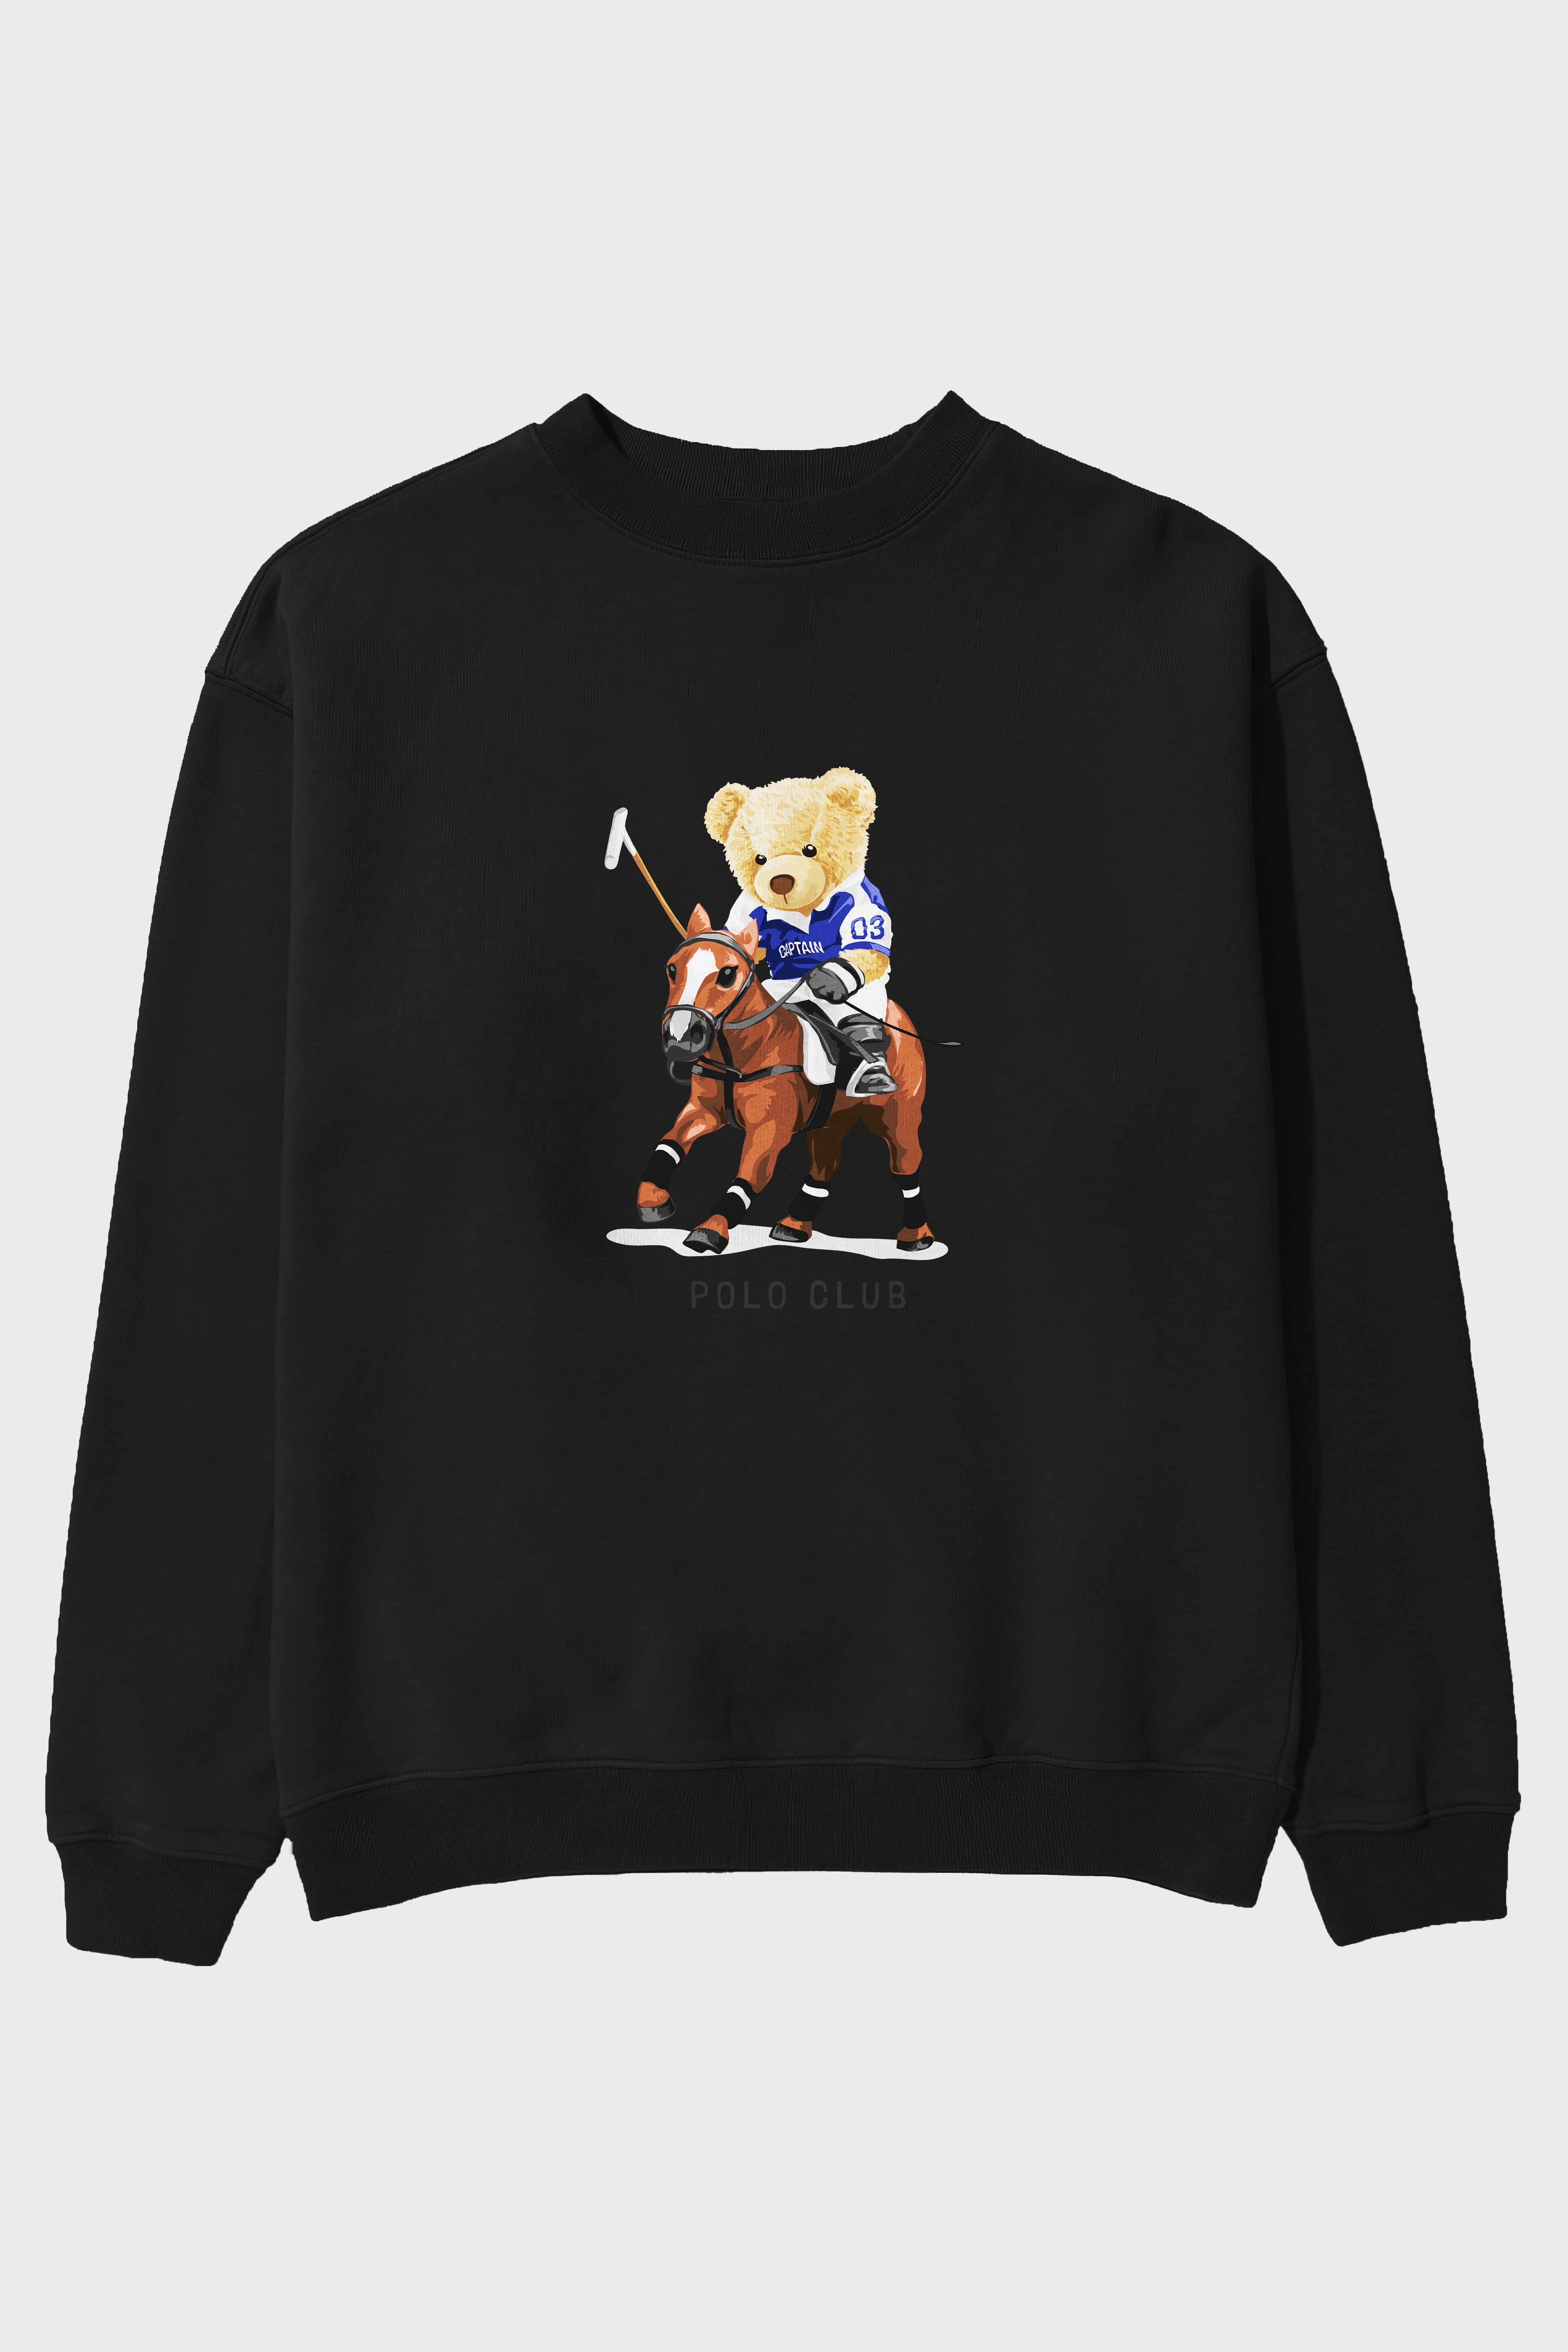 Teddy Bear Polo Club Ön Baskılı Oversize Sweatshirt Erkek Kadın Unisex